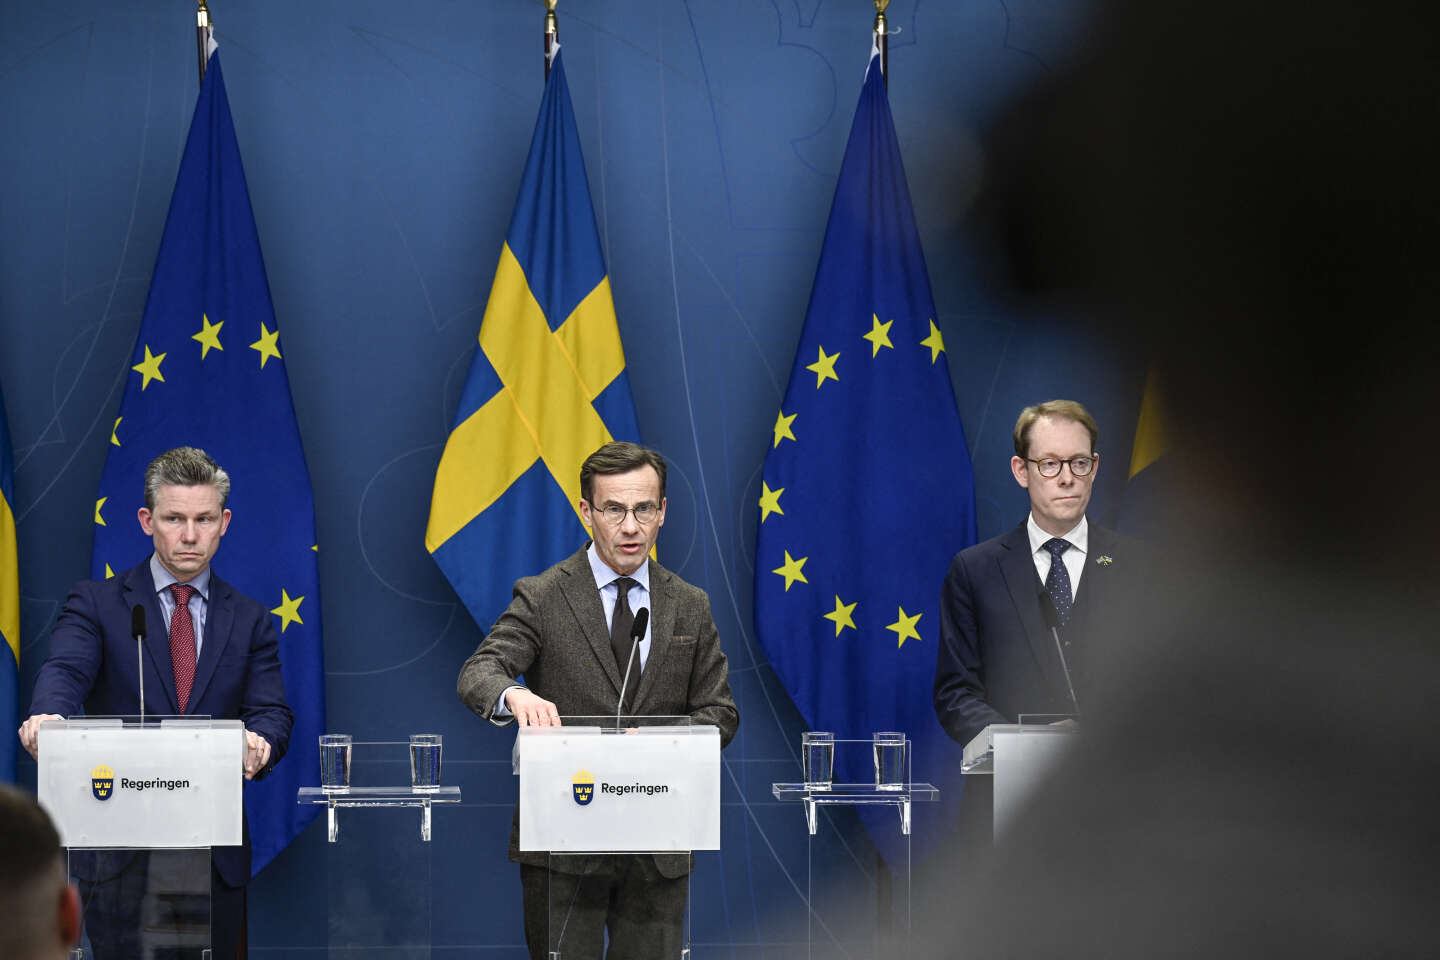 Reasons for Sweden's NATO membership deadlock